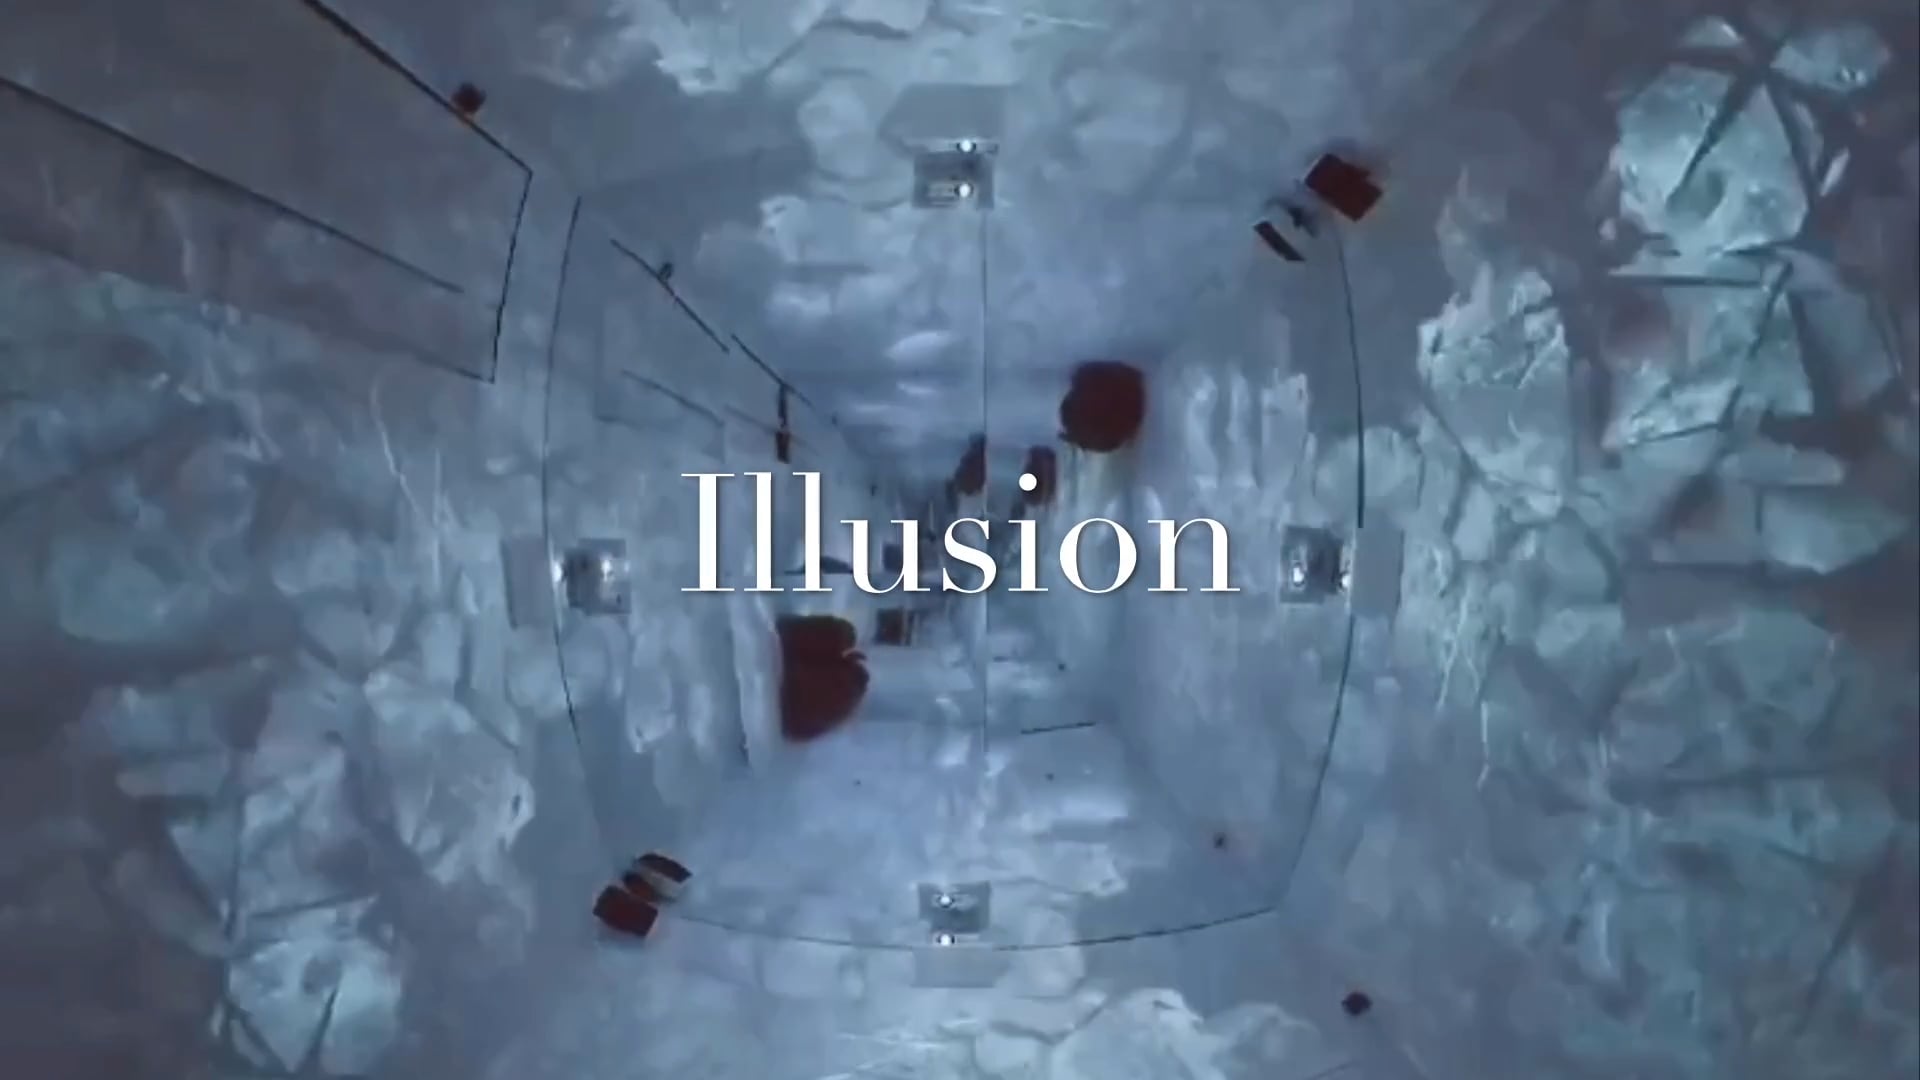 Illusion, 2019 - Teaser